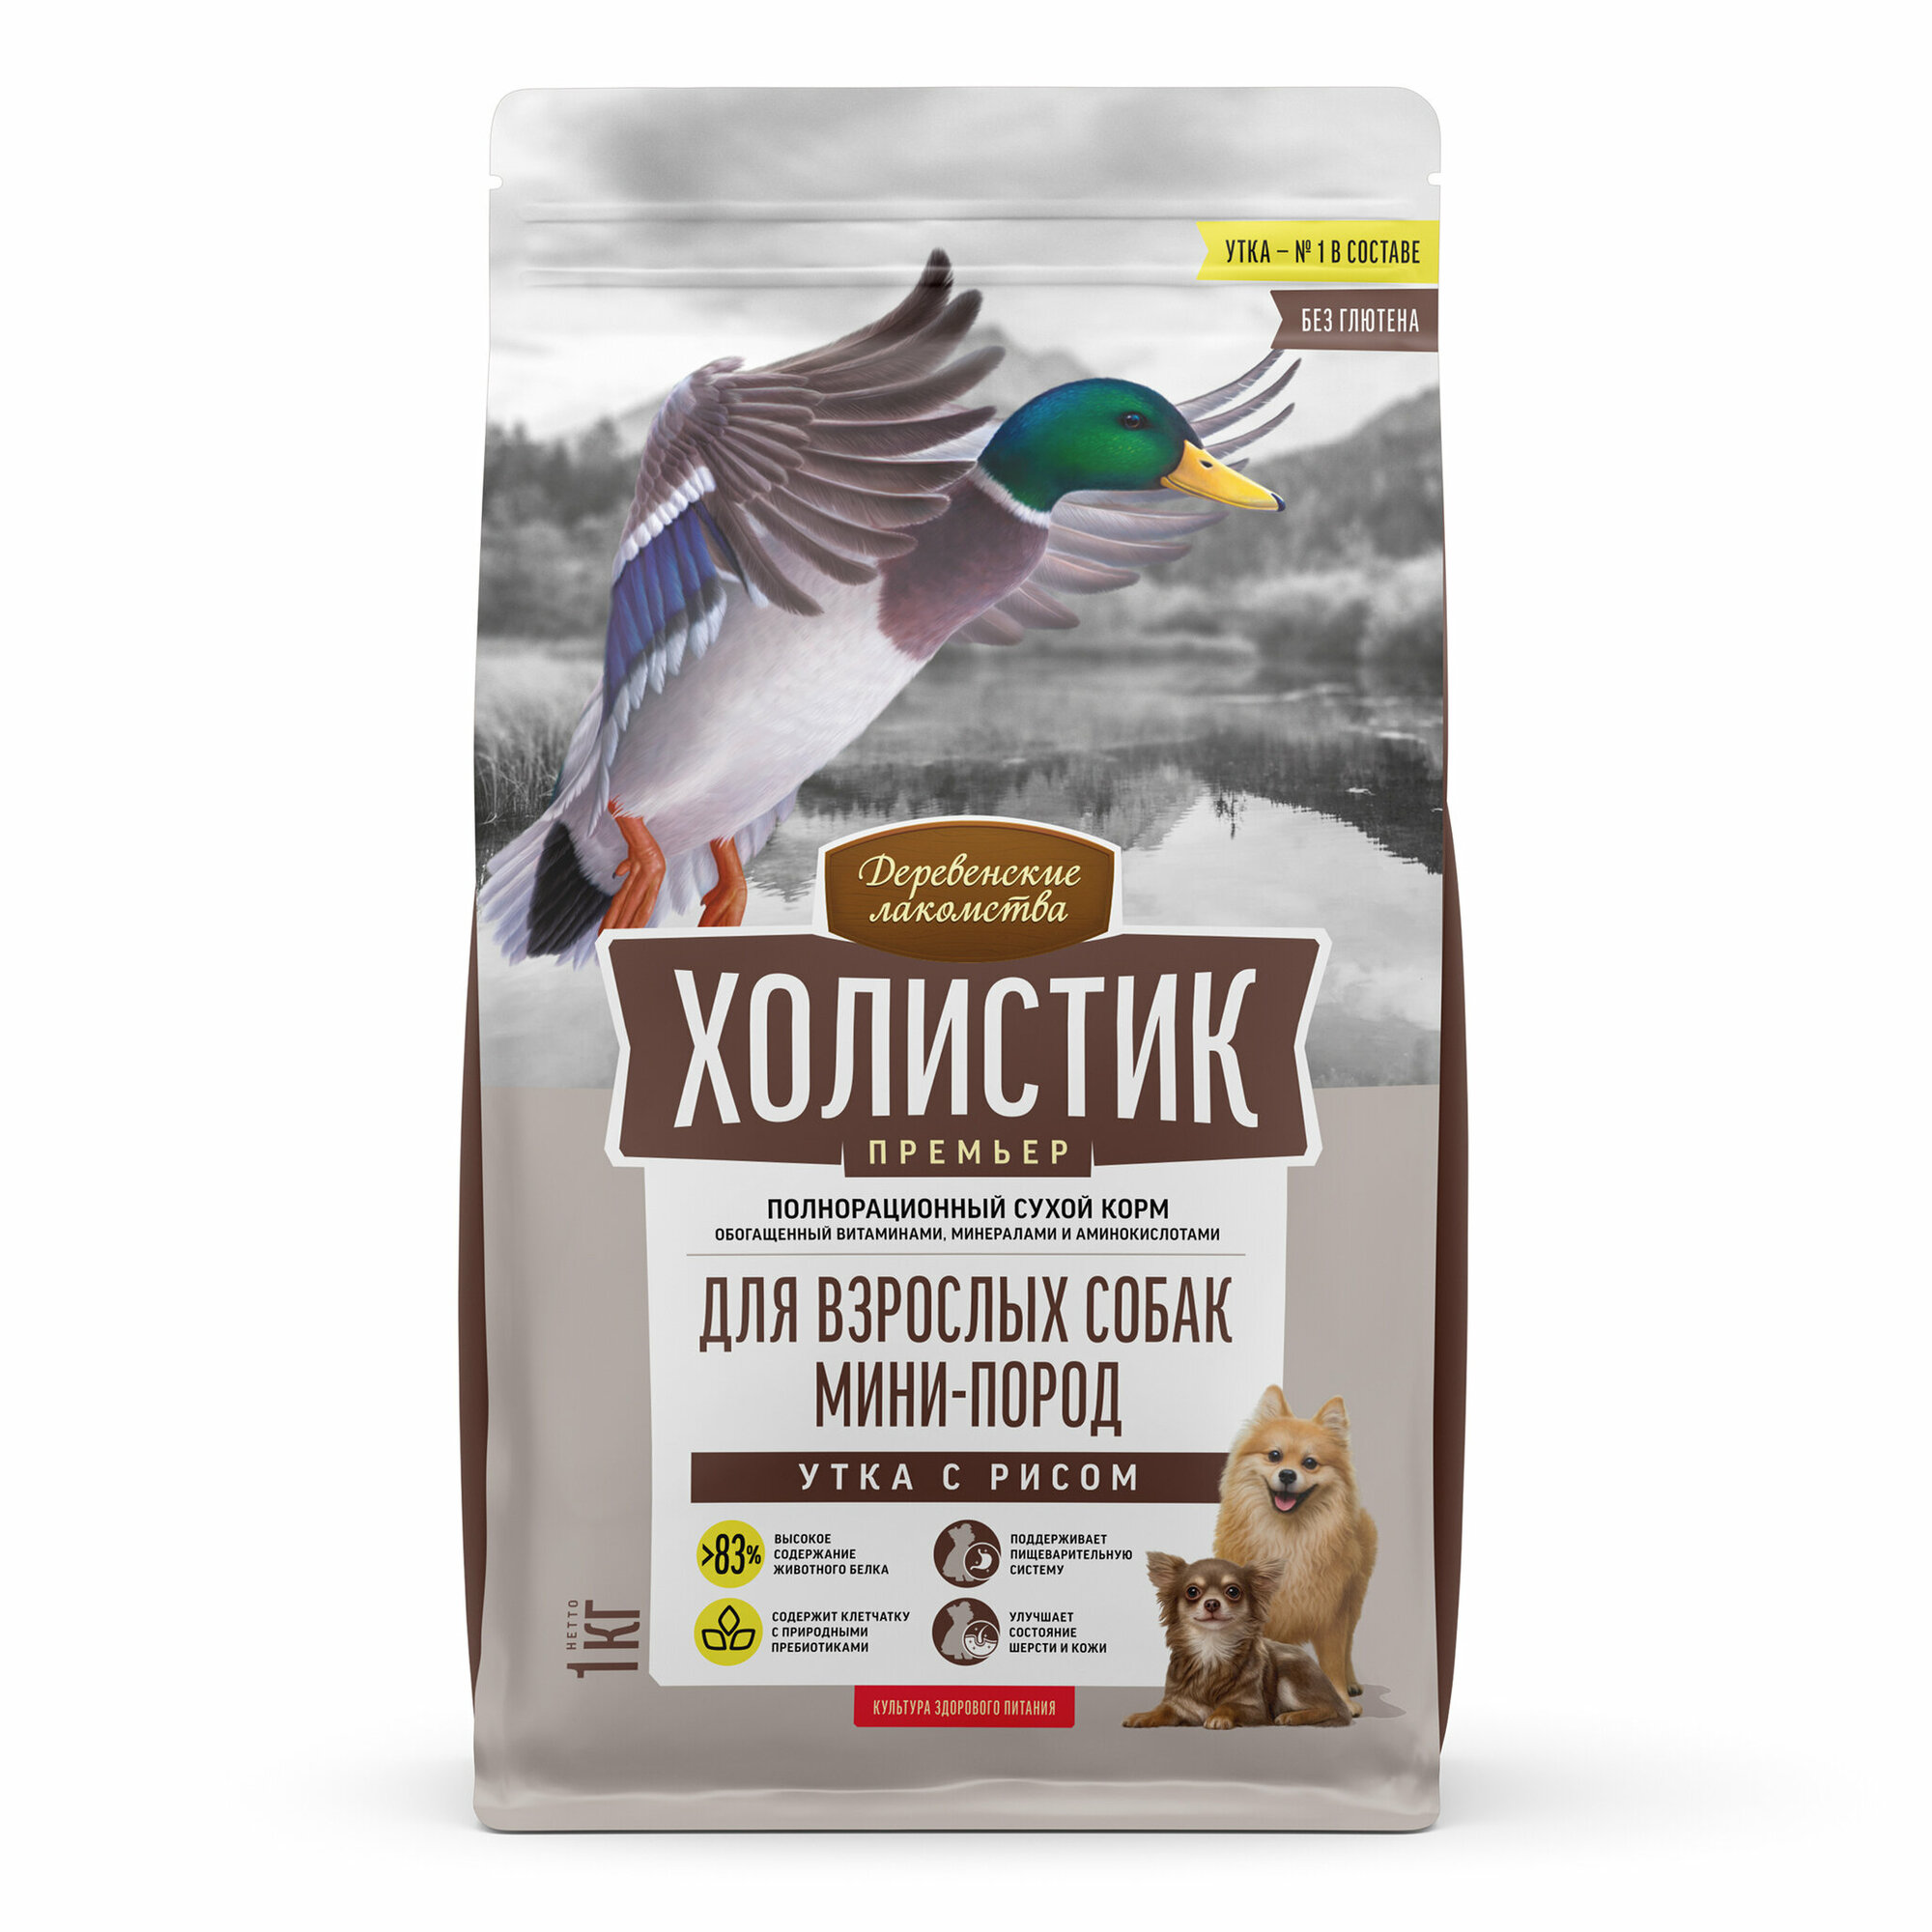 Деревенские лакомства "Холистик" сухой корм для собак мини пород (утка с рисом) 1 кг